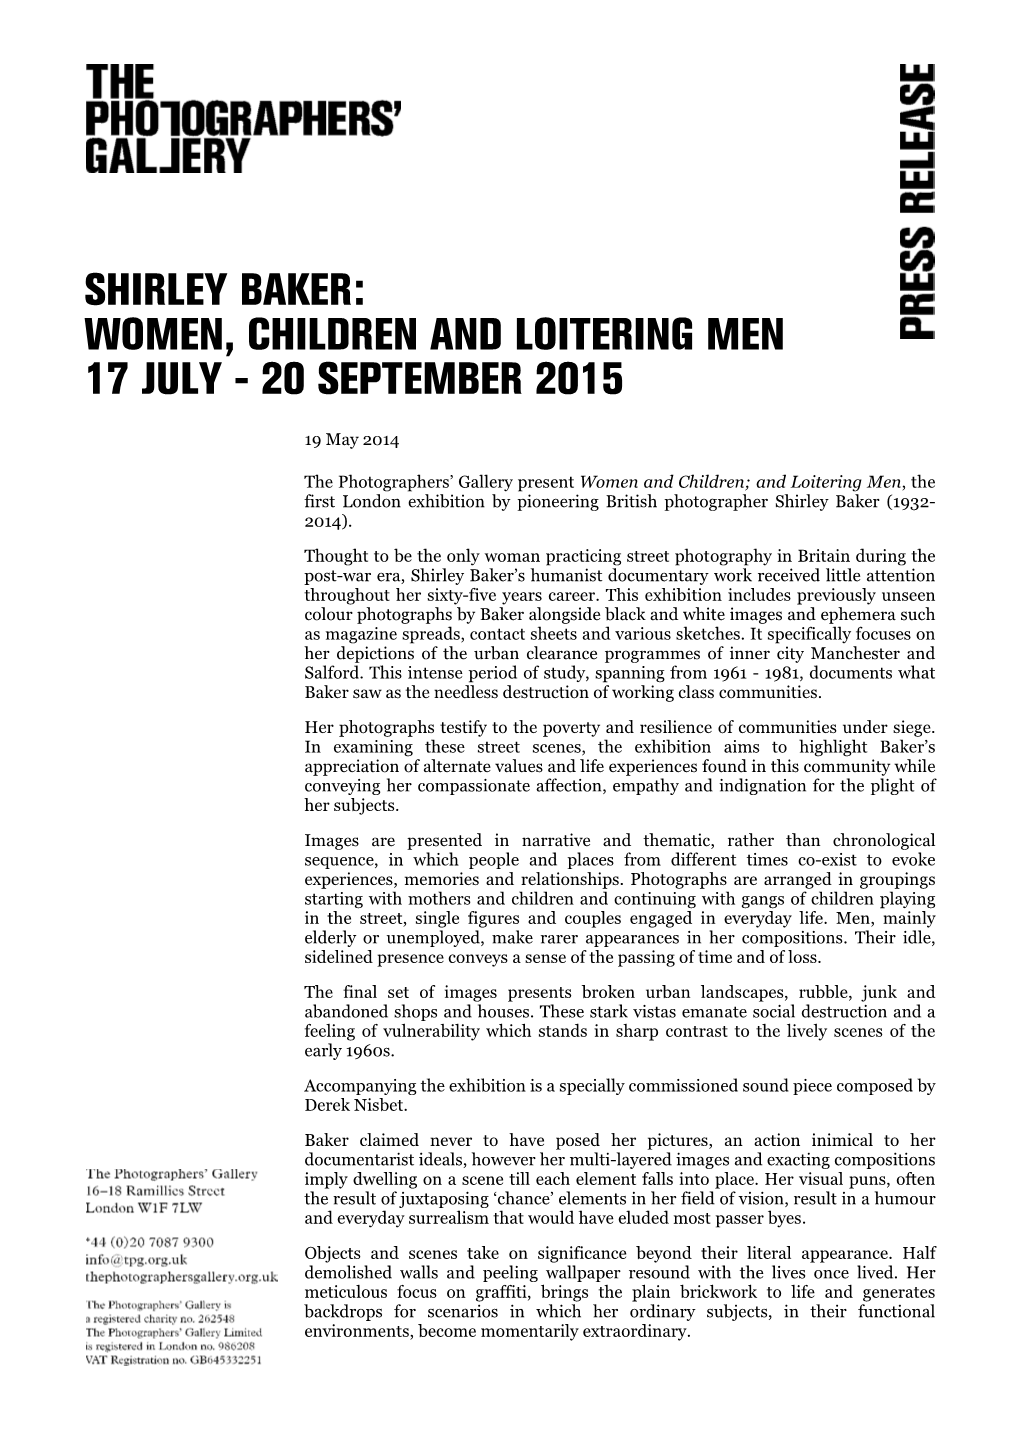 Shirley Baker: Women, Children and Loitering Men 17 July - 20 September 2015